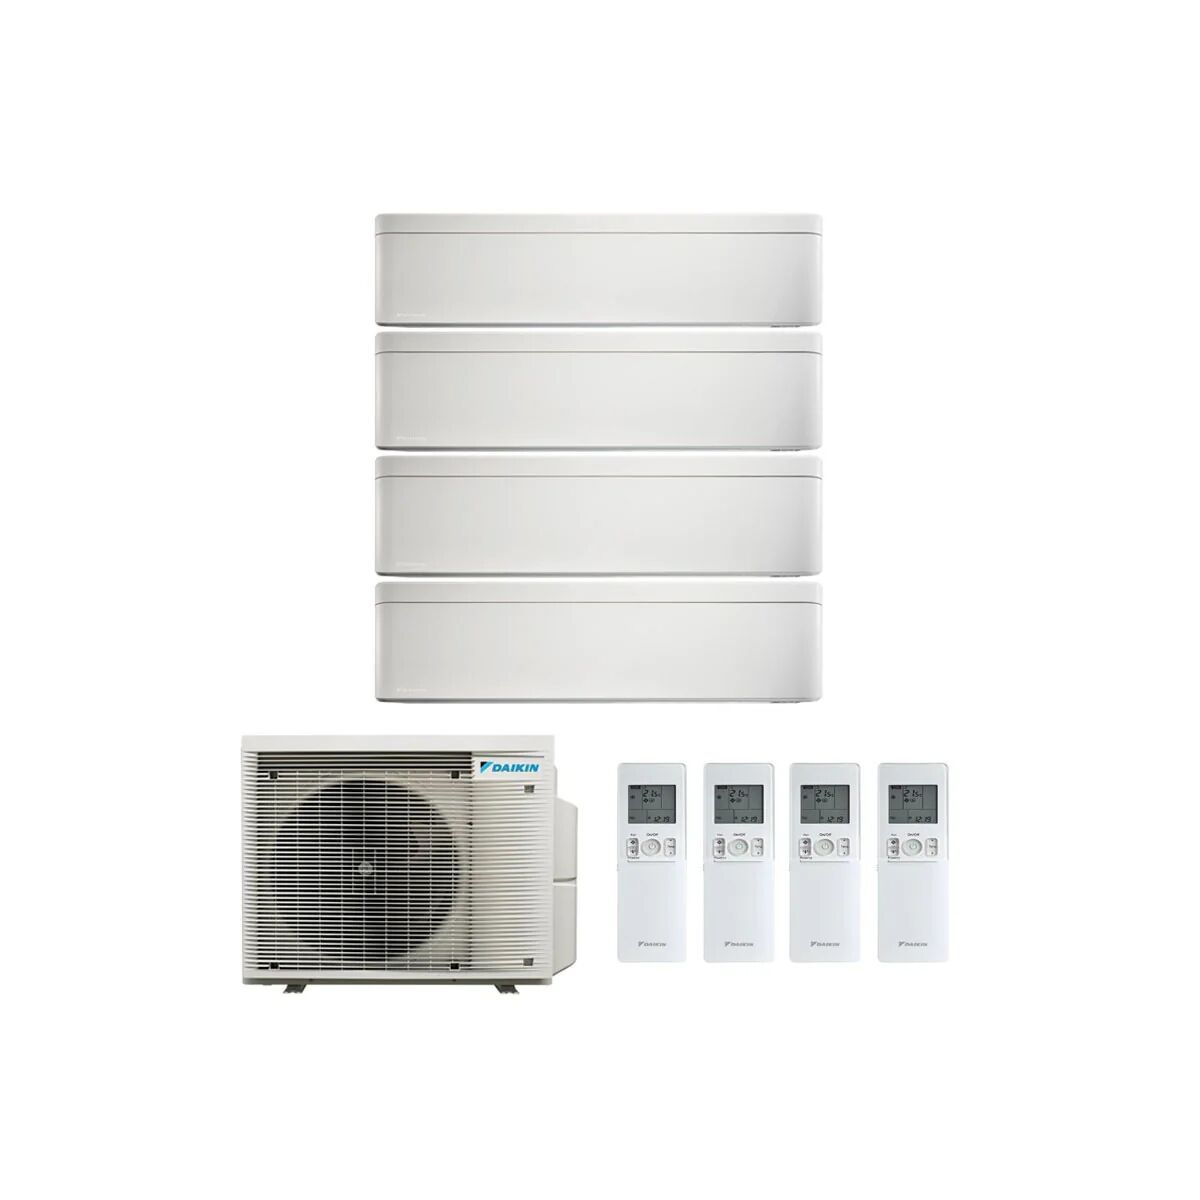 Condizionatore Daikin Stylish Bianco Quadri Split 9000+9000+9000+12000 Btu Inverter R32 4Mxm68 A+++ Wifi (4MXM68A 9+9+9+12)